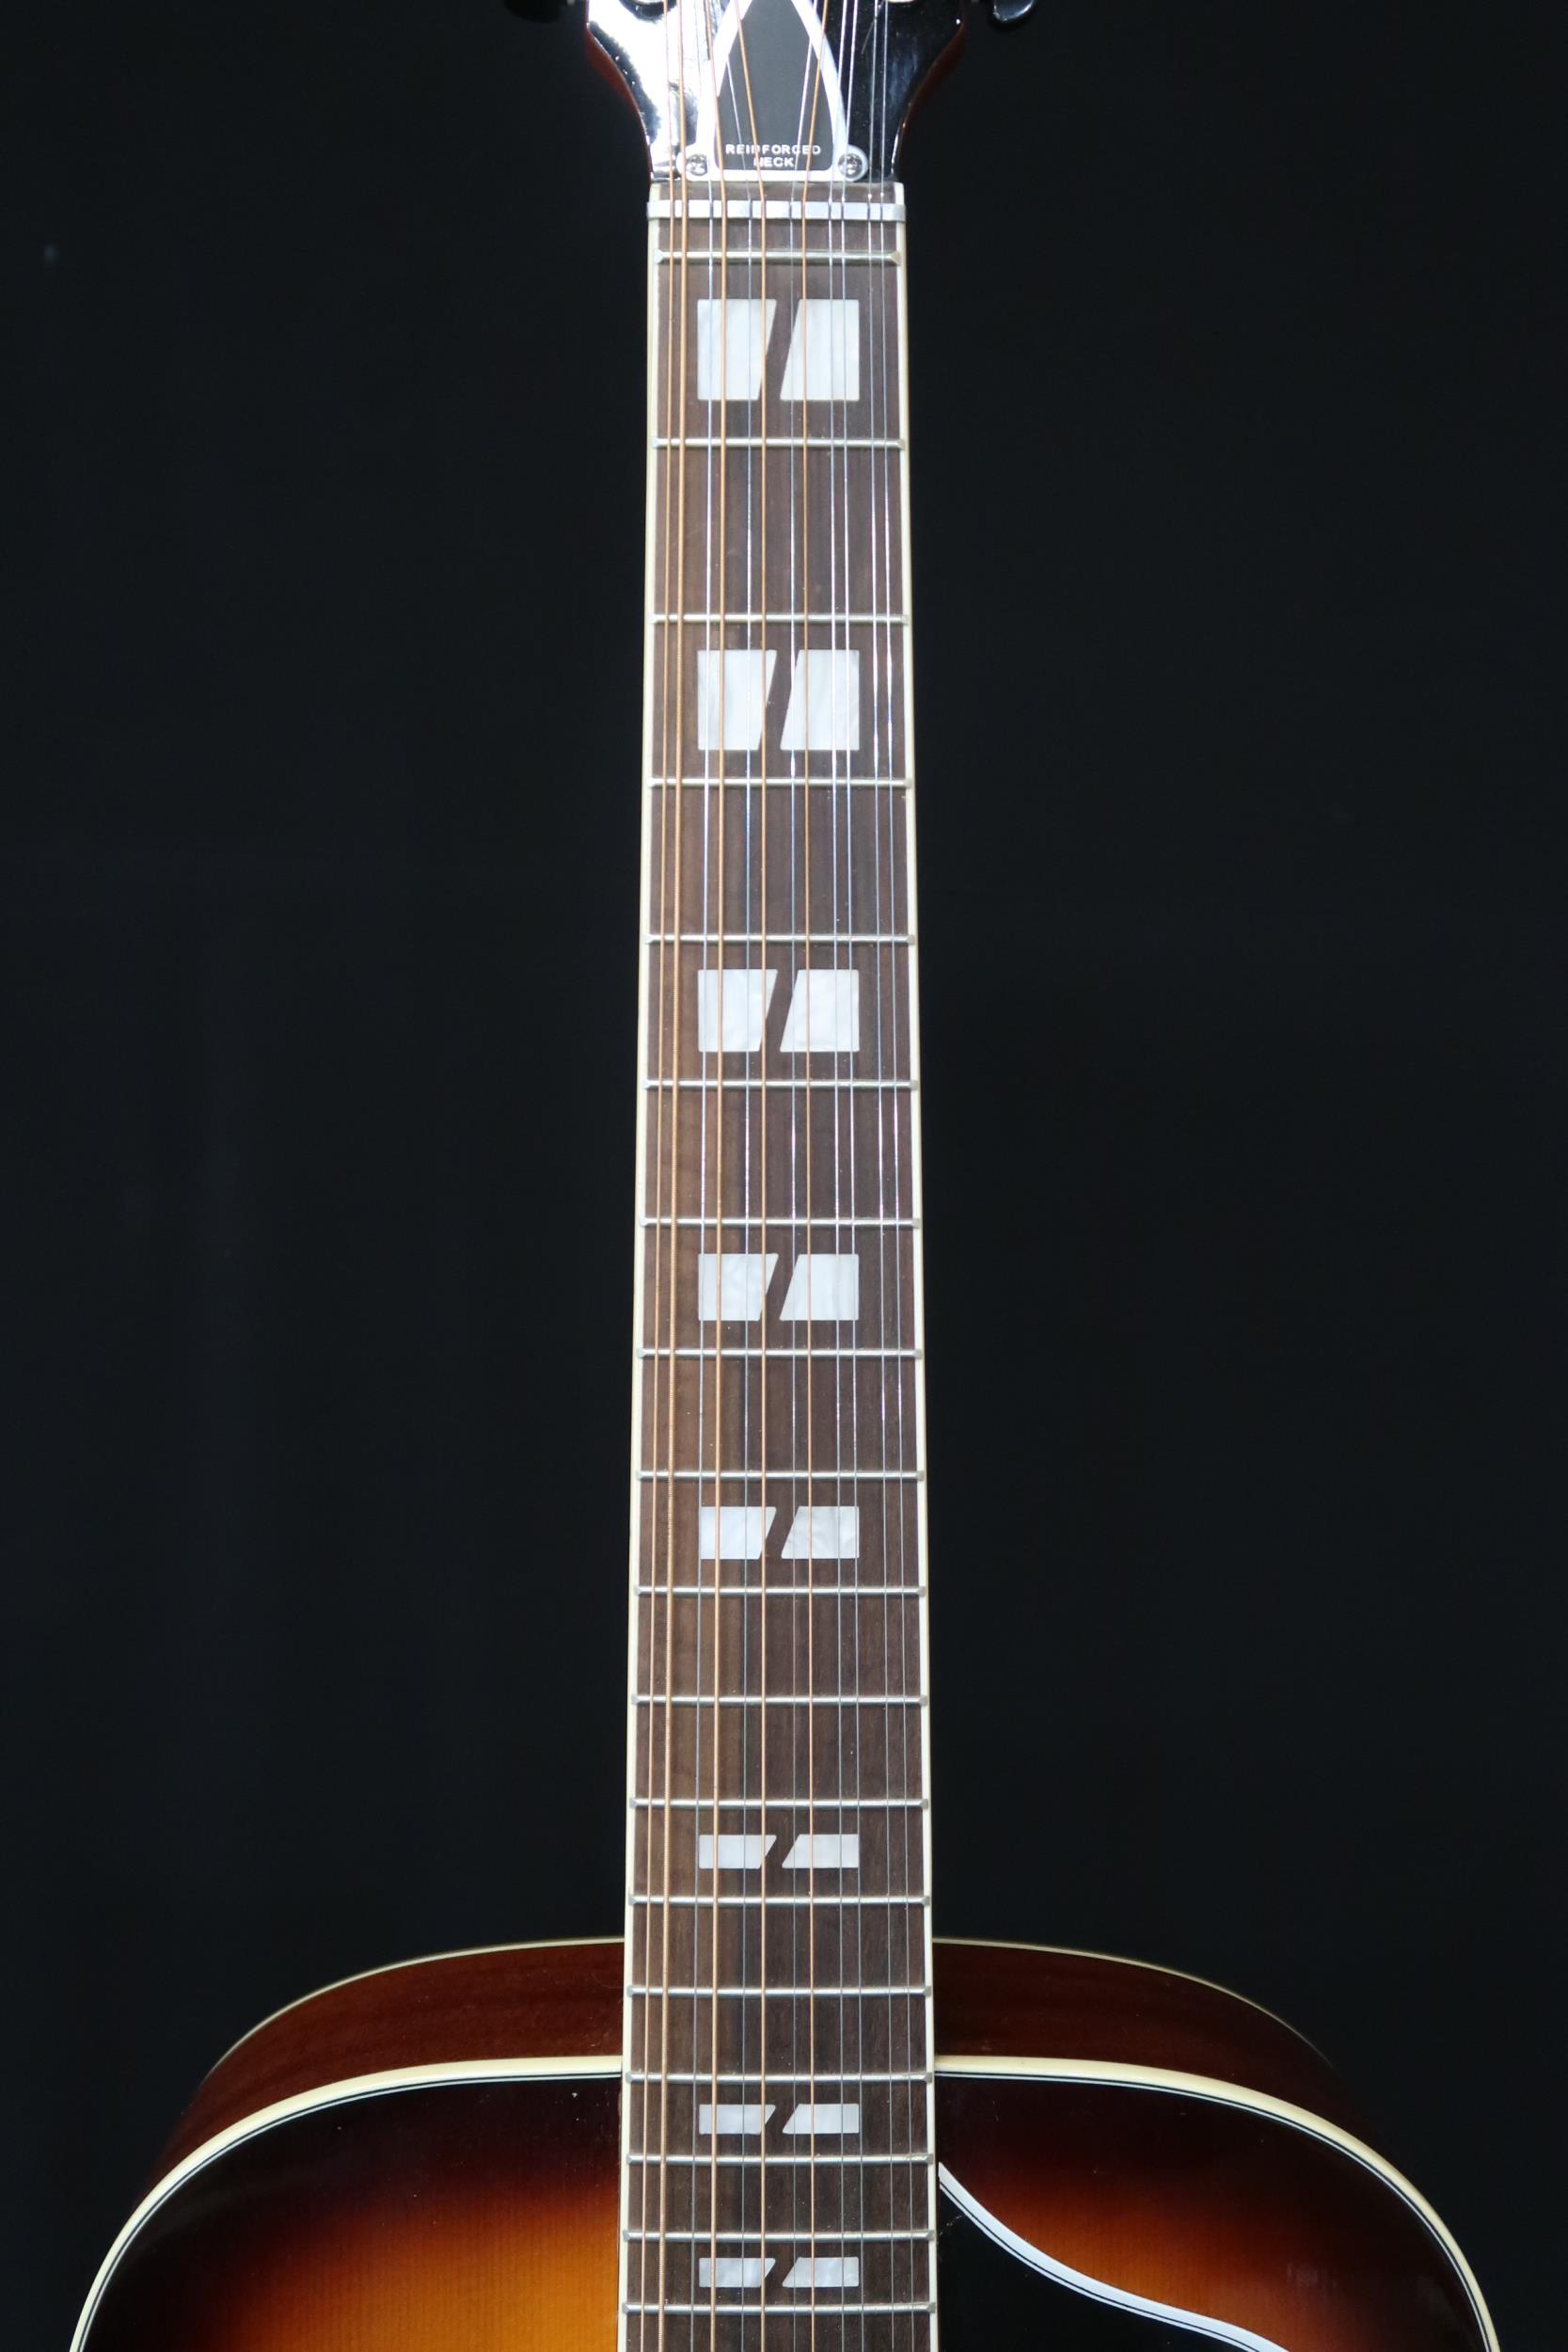 A Echo Ranger 12 string acoustic guitar model XII VR in sunburst, 20 frets serial number Y17081272 - Image 4 of 22